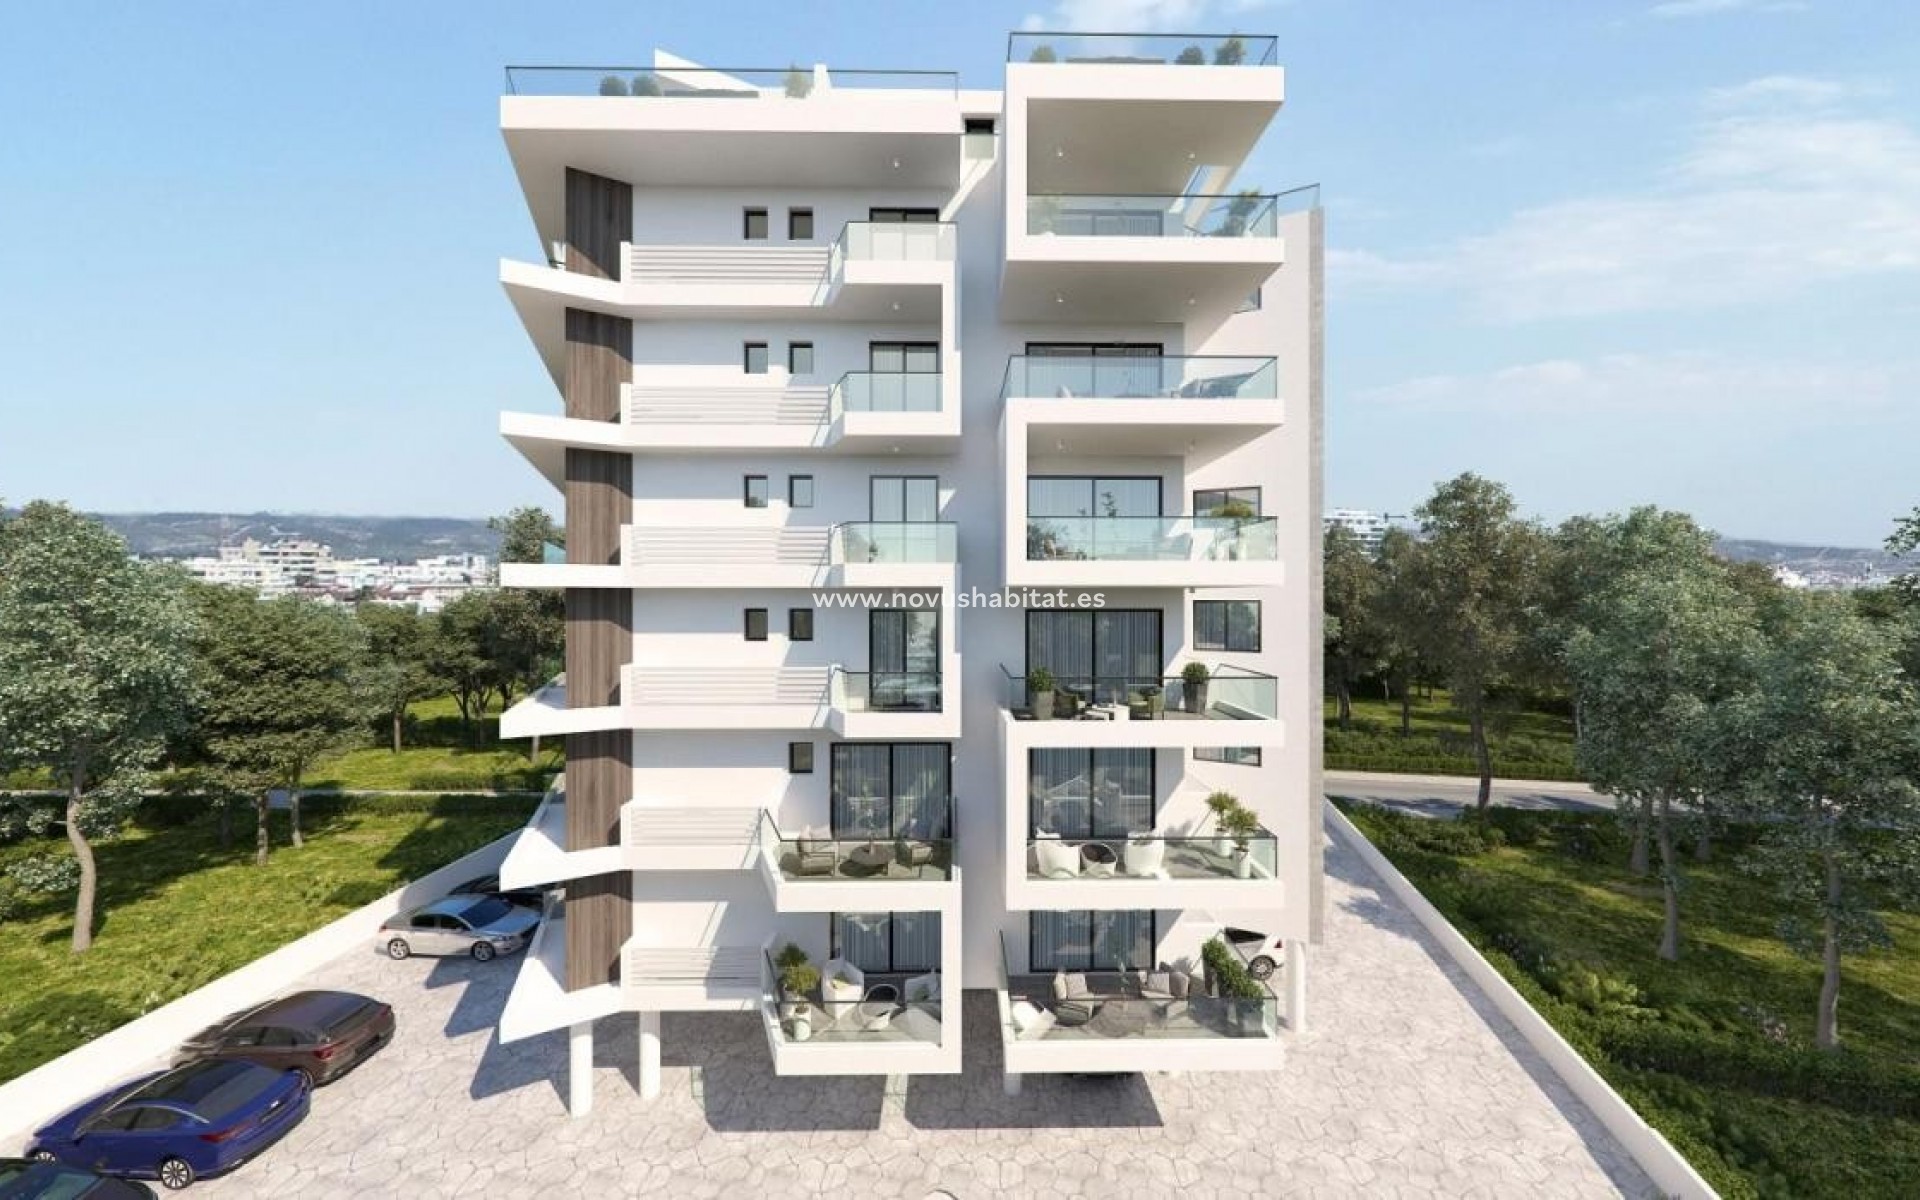 Herverkoop - Appartement - Larnaca - Larnaca (City) - Makenzy